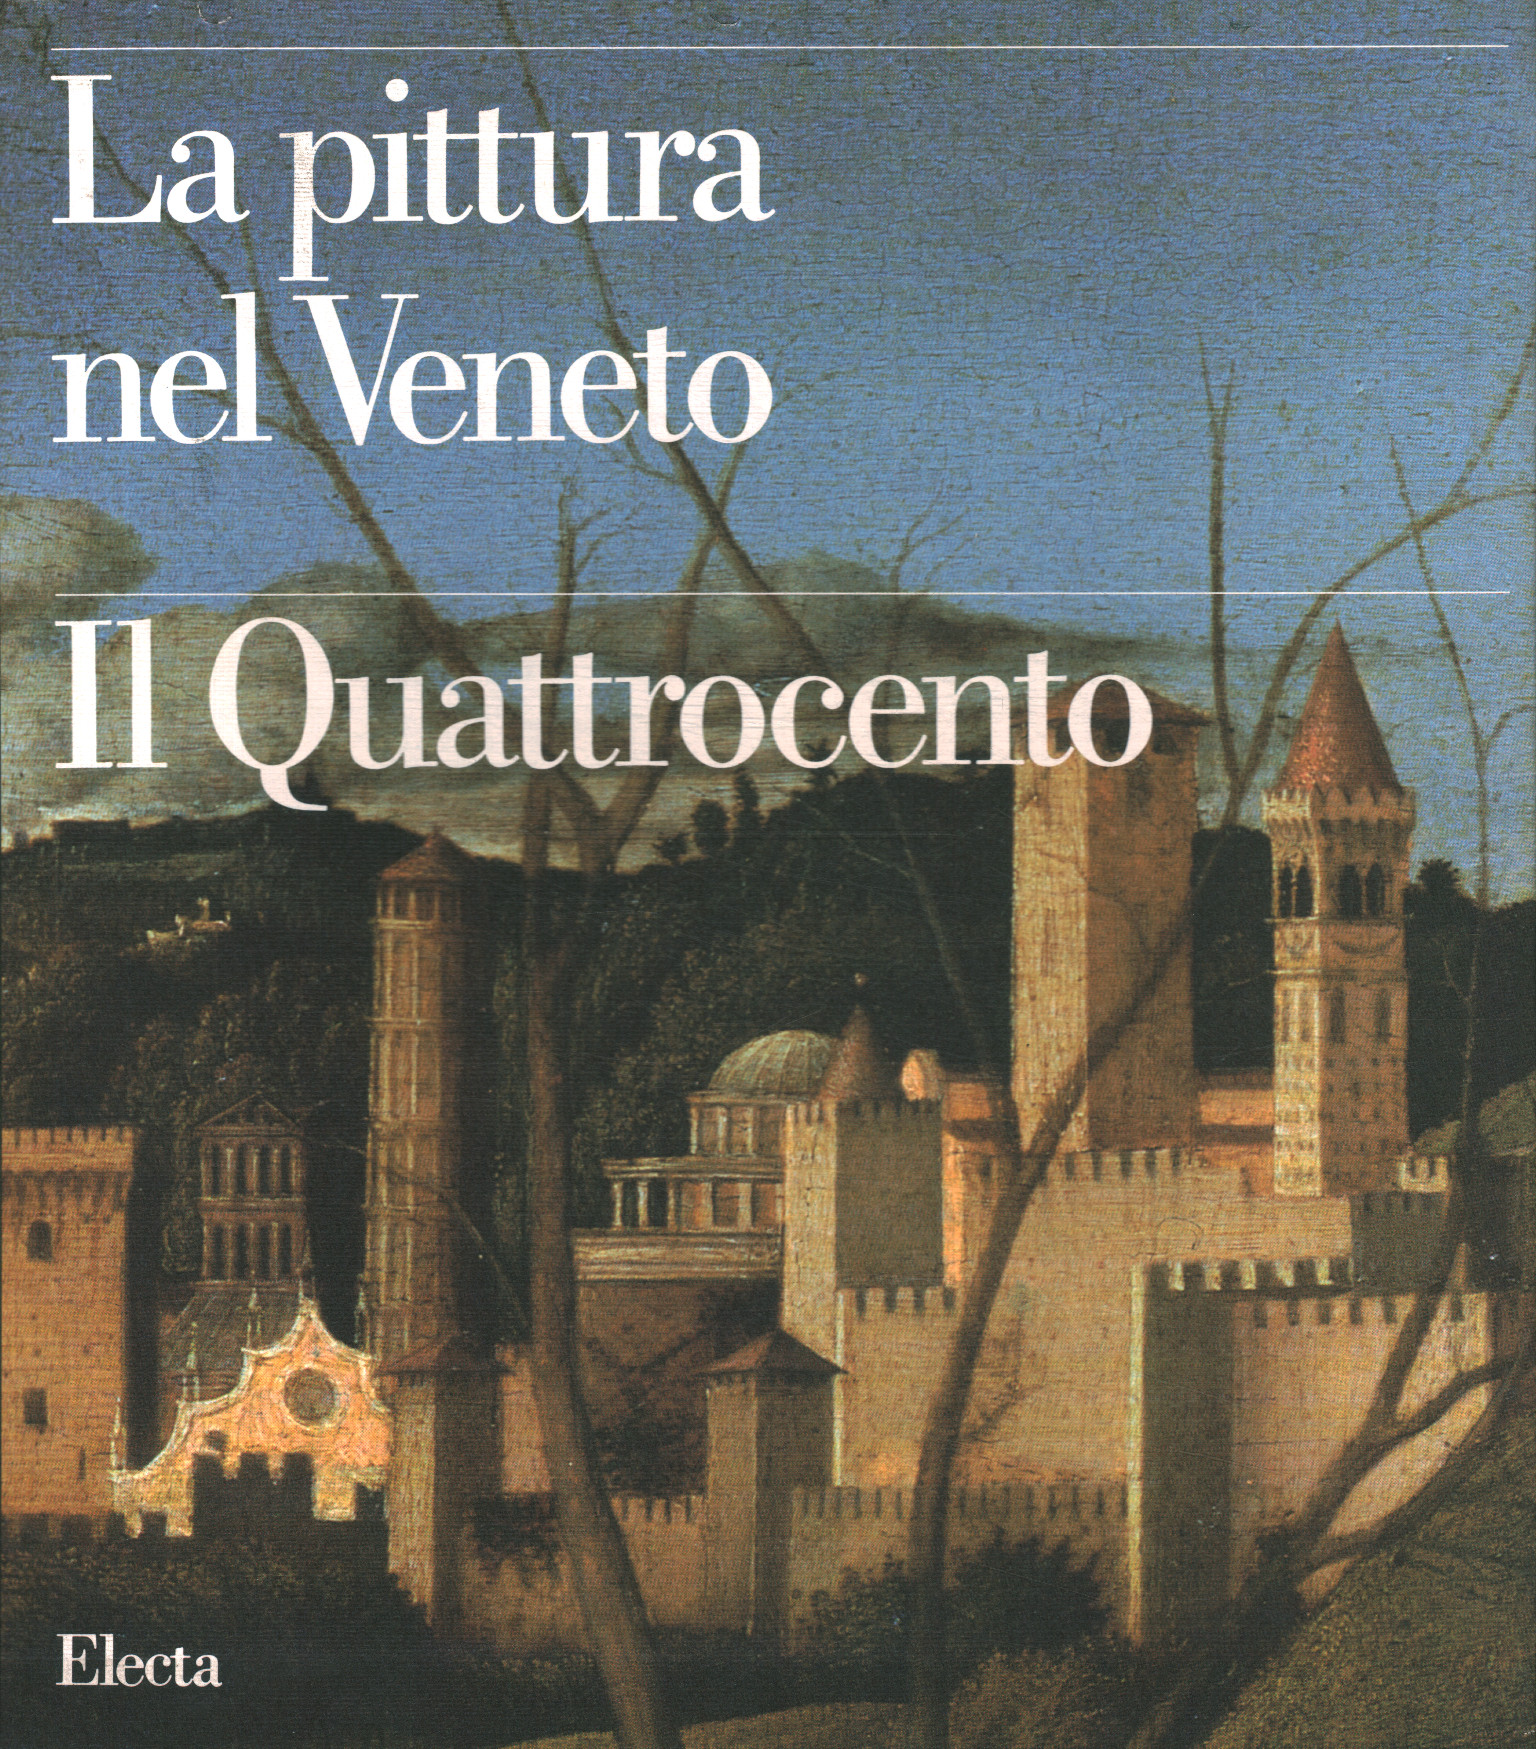 Malerei im Veneto. Das 15. Jahrhundert%2, Malerei im Veneto. Die Vierhundert%2